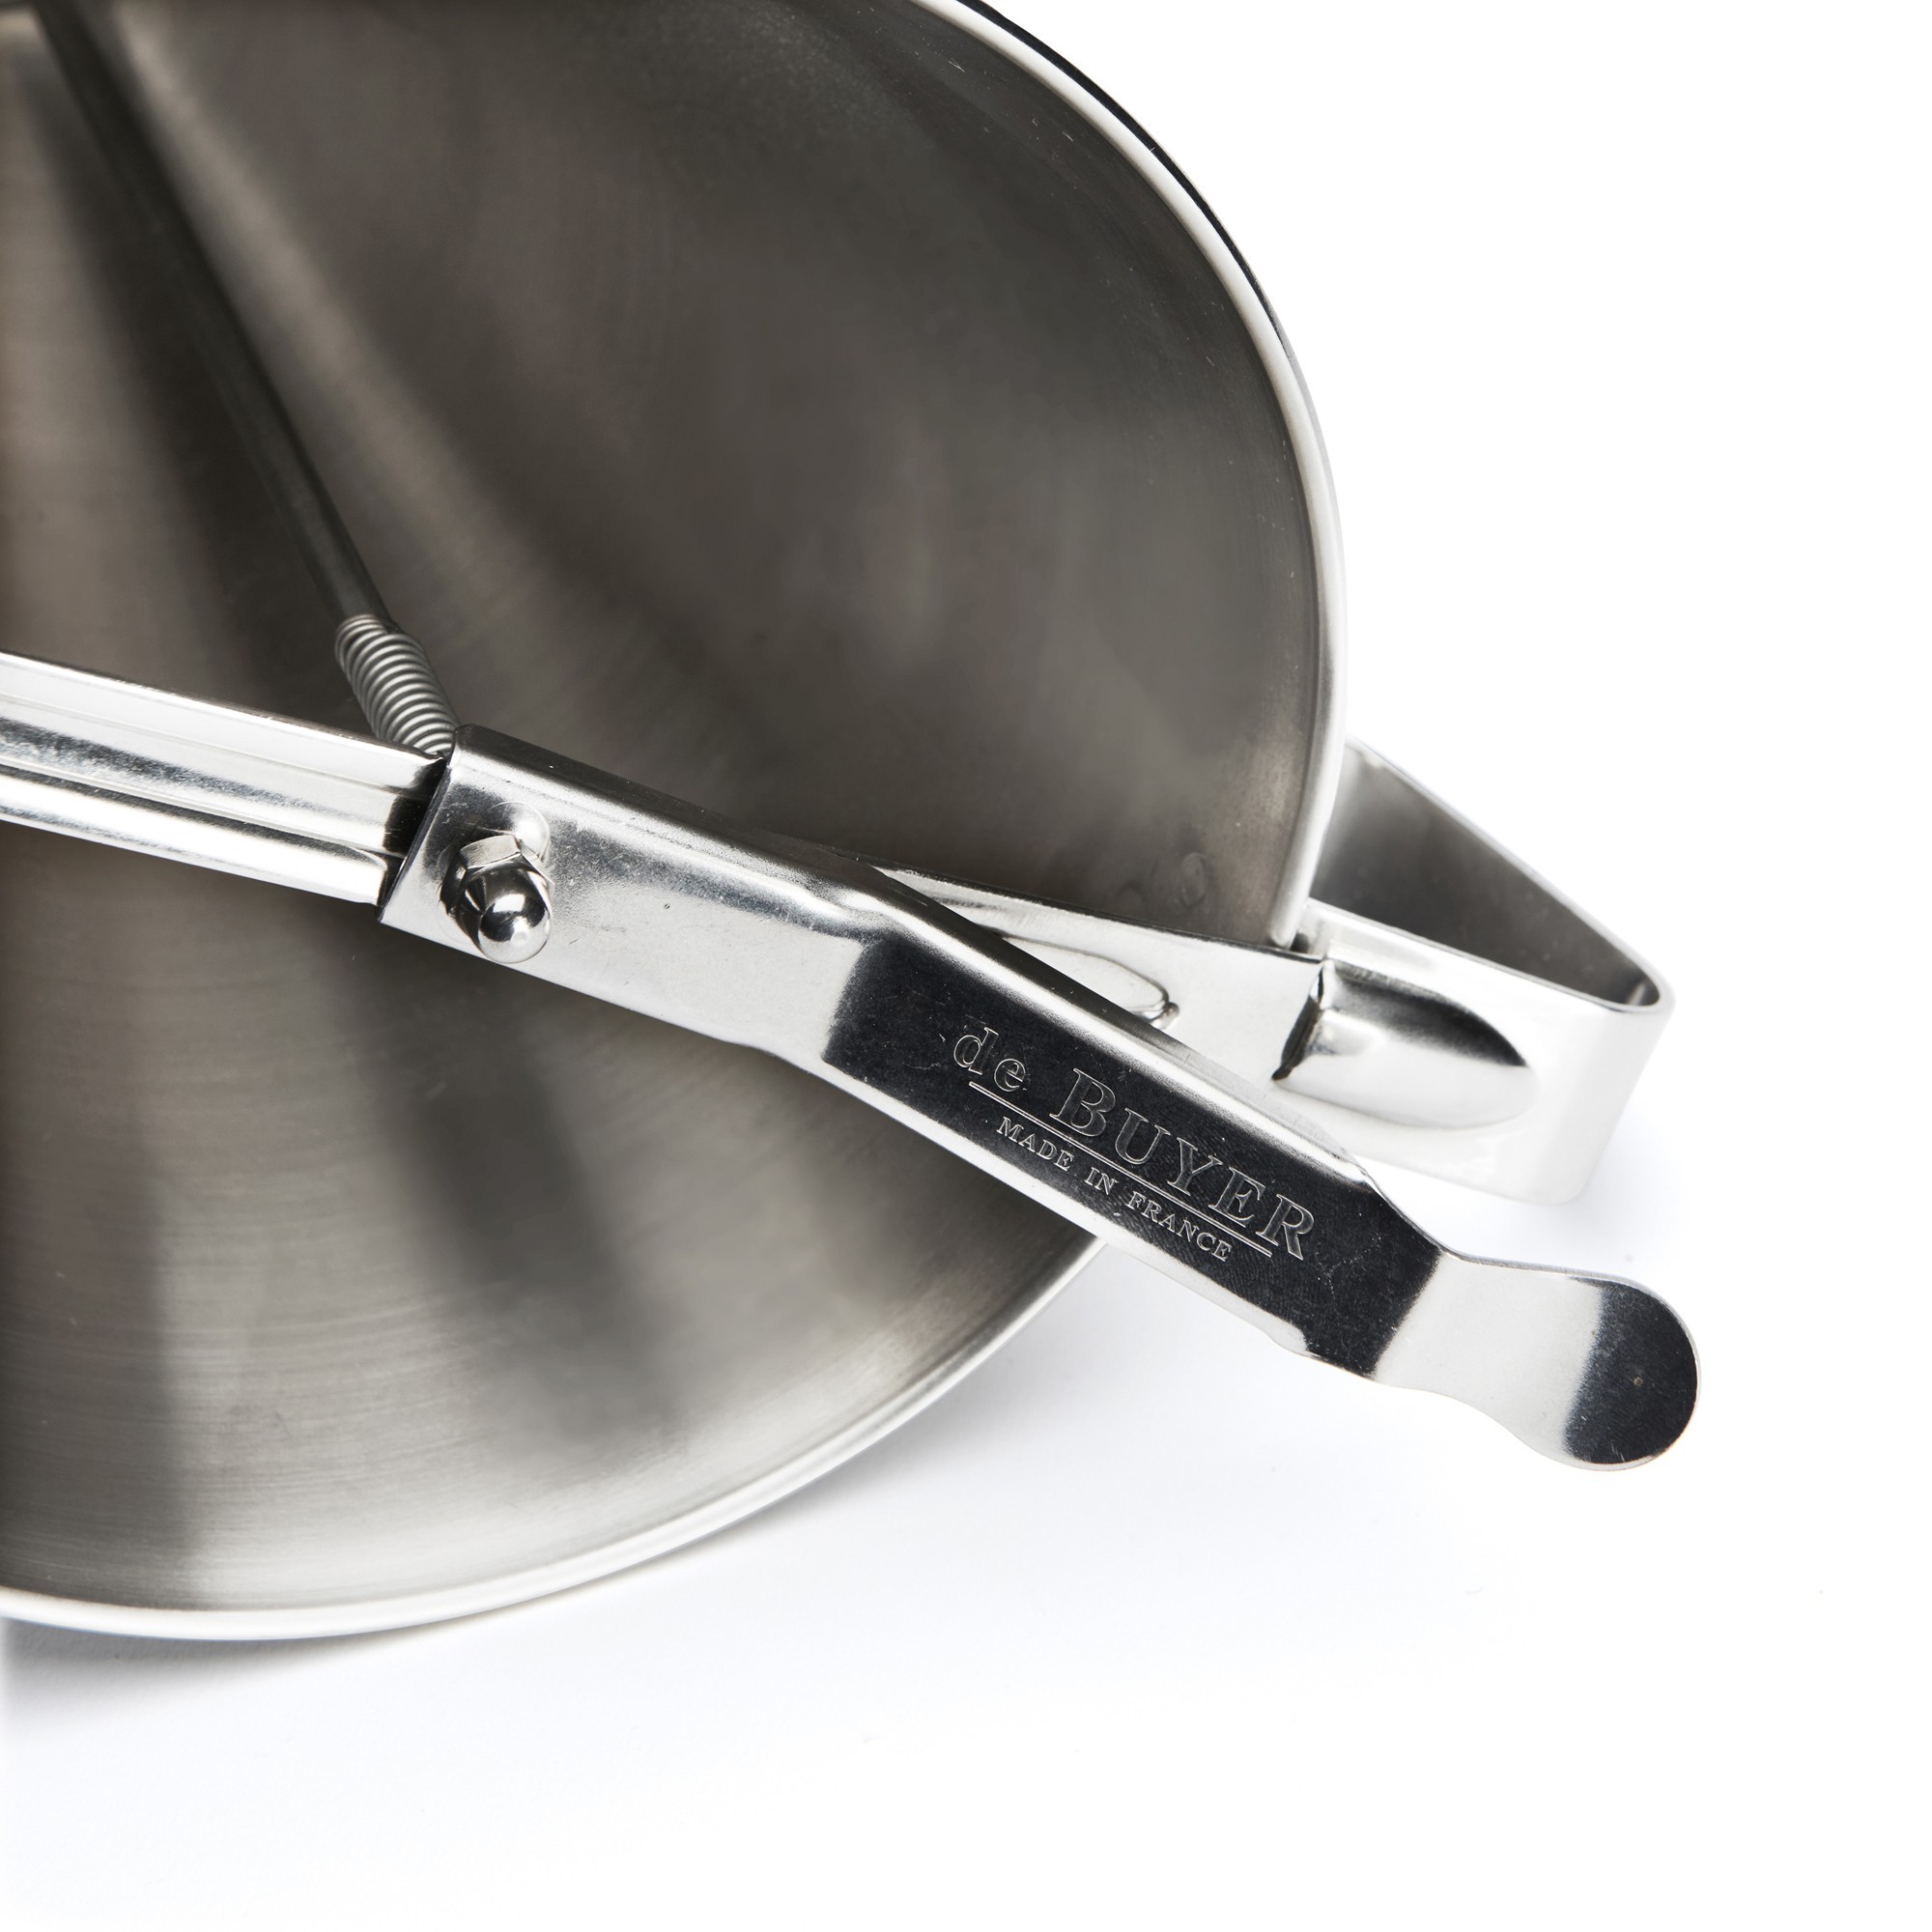 de Buyer KWIK MAX Embudo de pistón – 3.5 cuartos de galón – Embudo de  cocina de acero inoxidable para dispensar preparaciones líquidas y  semilíquidas